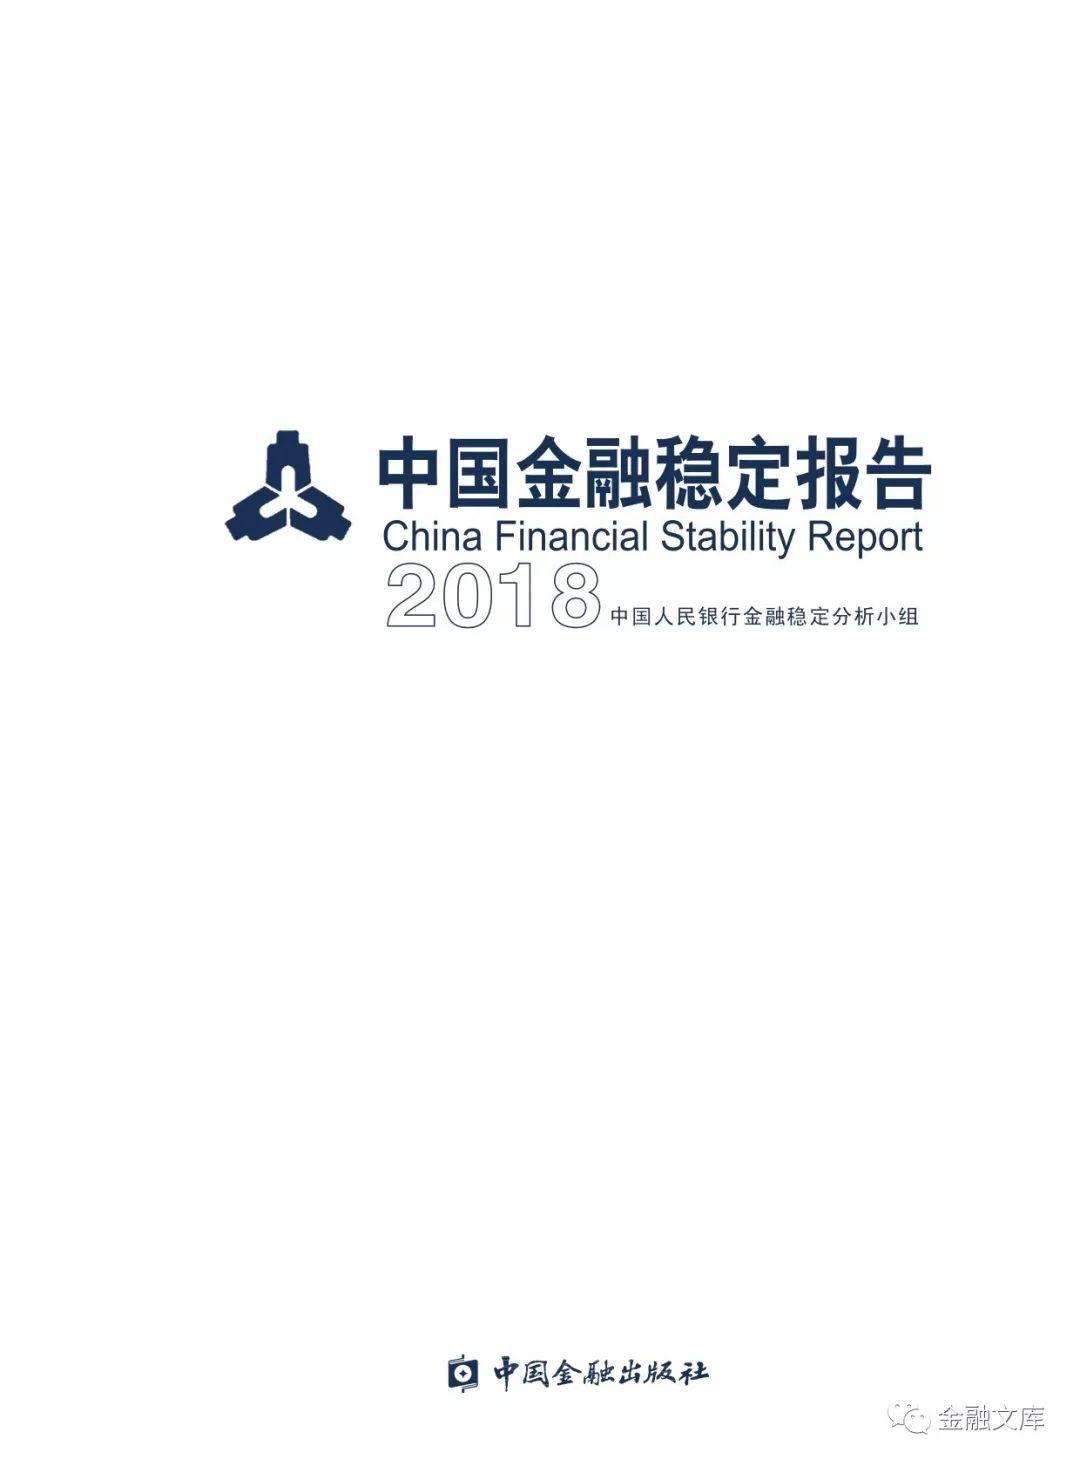 中国人民银行发布《中国金融稳定报告（2018）》